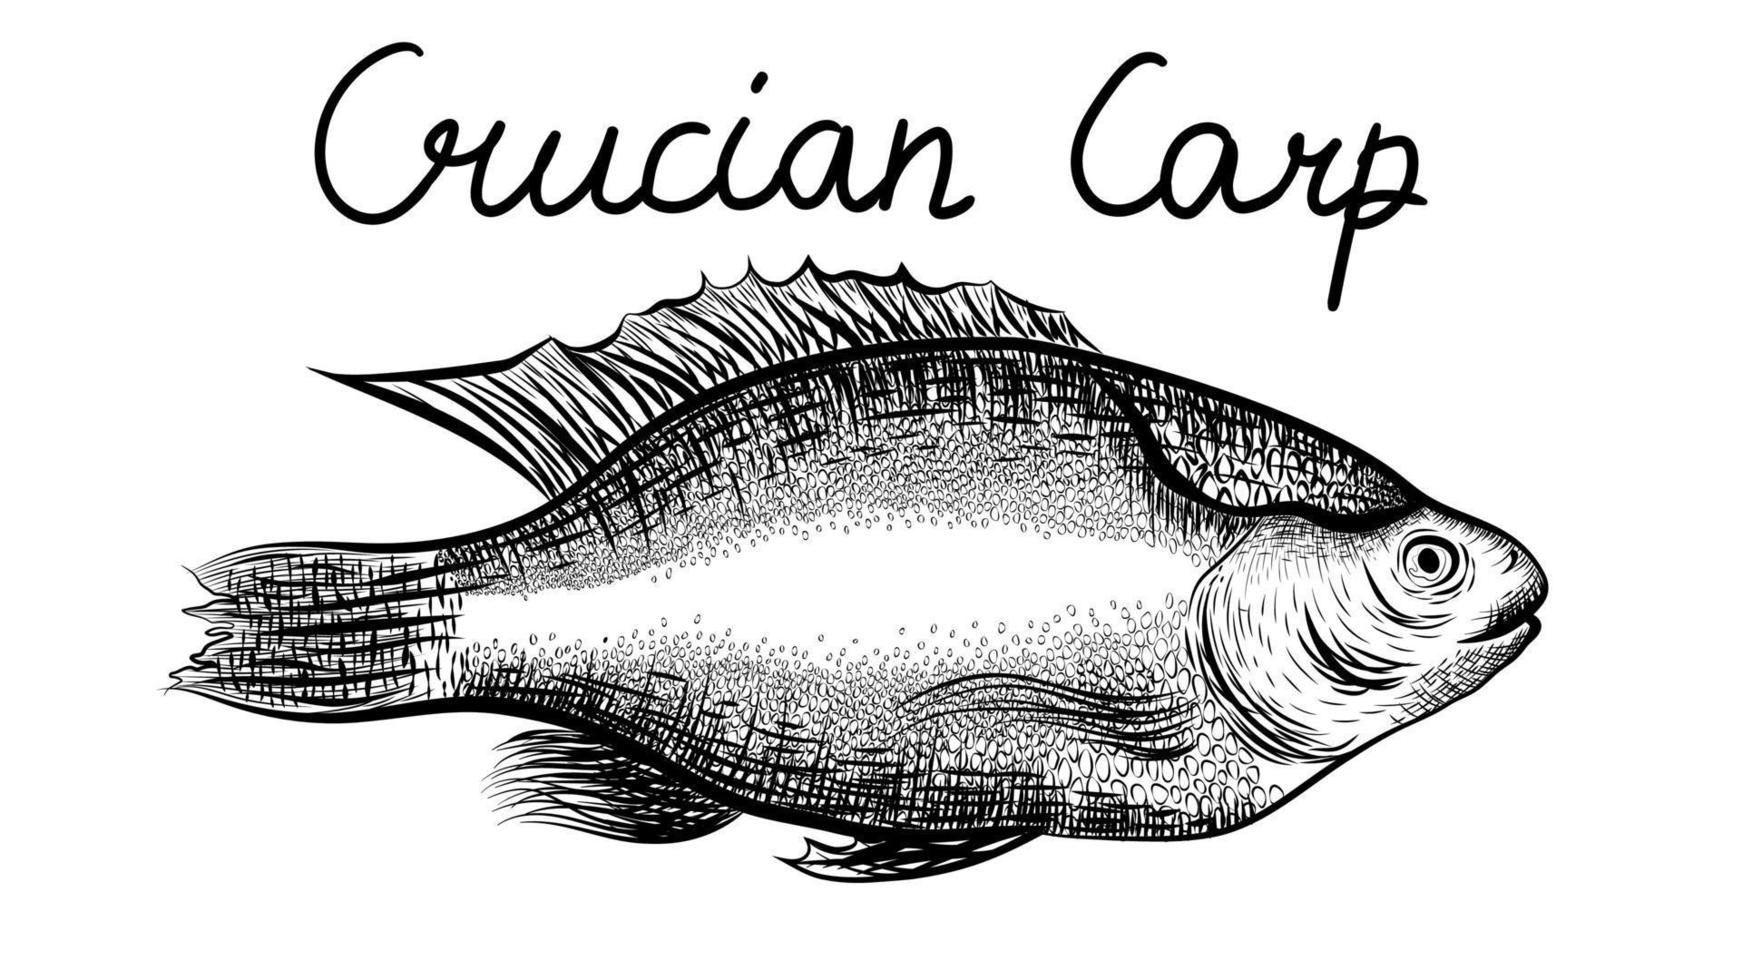 carassin, sorte de poisson de côté. dessin horizontal noir et blanc. gravure réaliste de poisson isolé sur blanc. illustration de vecteur dessiné à la main